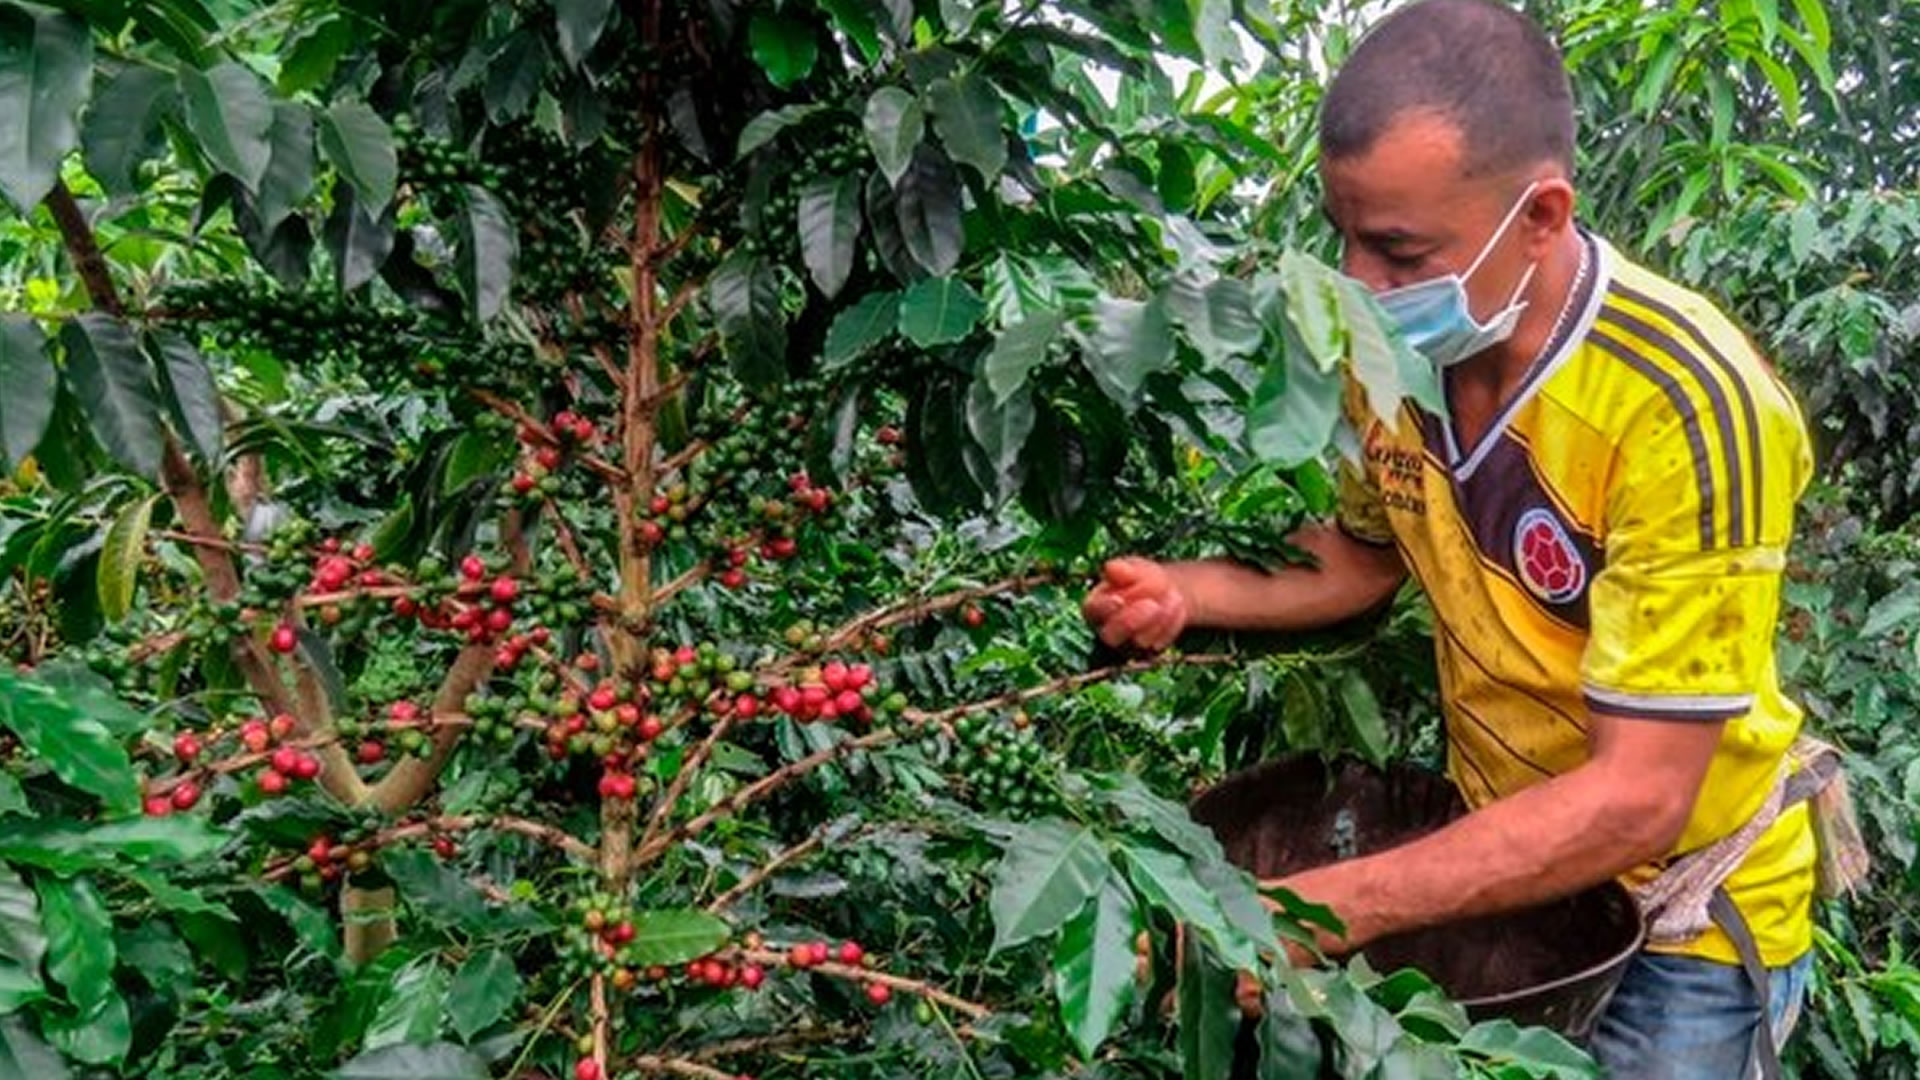 Un agricultor recolecta granos de café en una plantación en el municipio de La Tebaida, departamento de Quindío, Colombia, el 21 de mayo de 2020 (Fotografía: AFP)